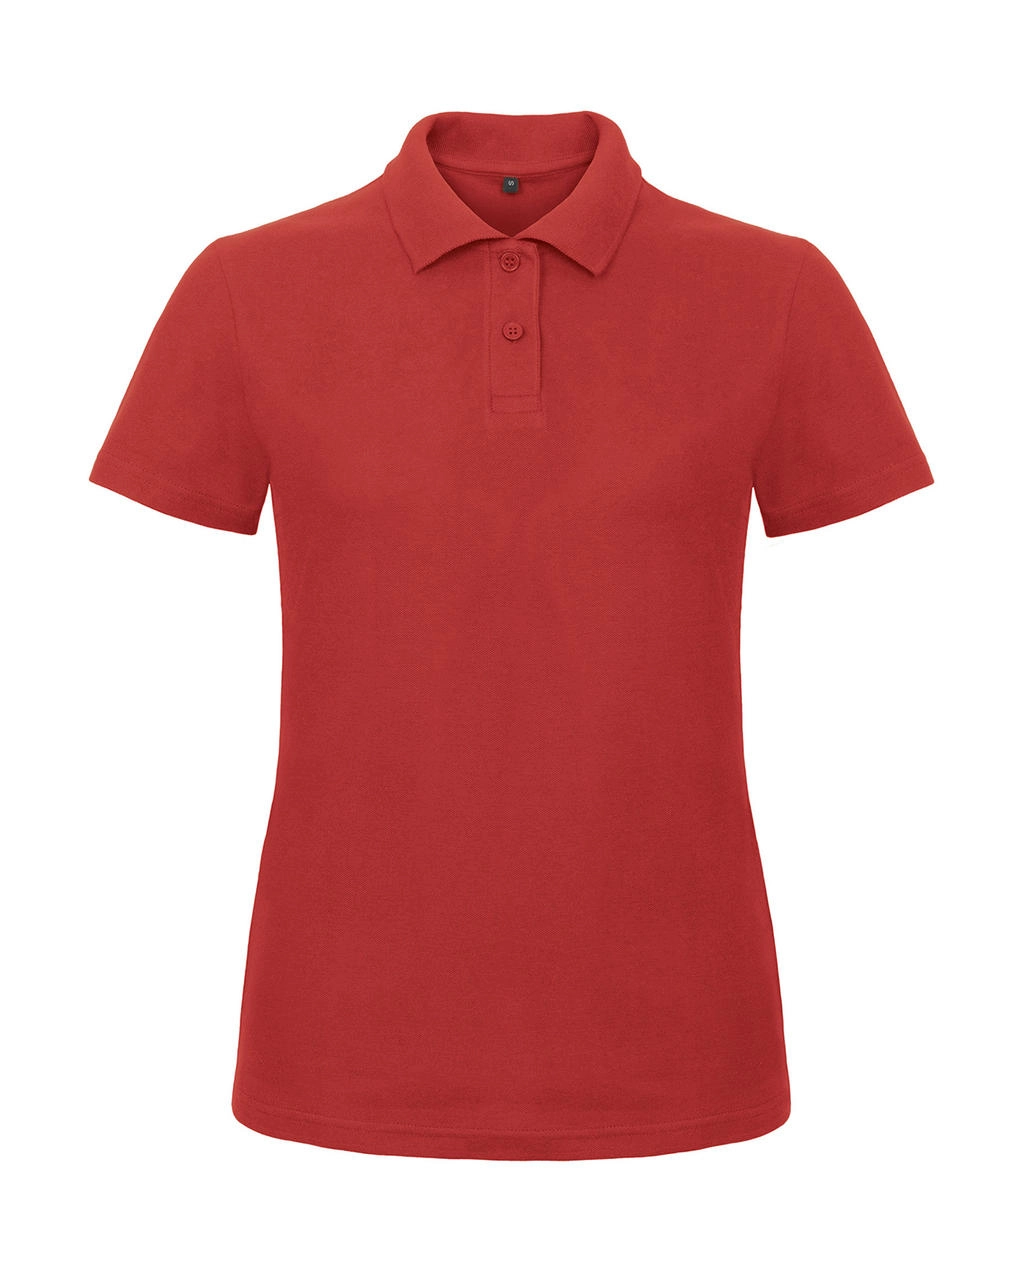 ID.001/women Piqué Polo Shirt zum Besticken und Bedrucken in der Farbe Red mit Ihren Logo, Schriftzug oder Motiv.